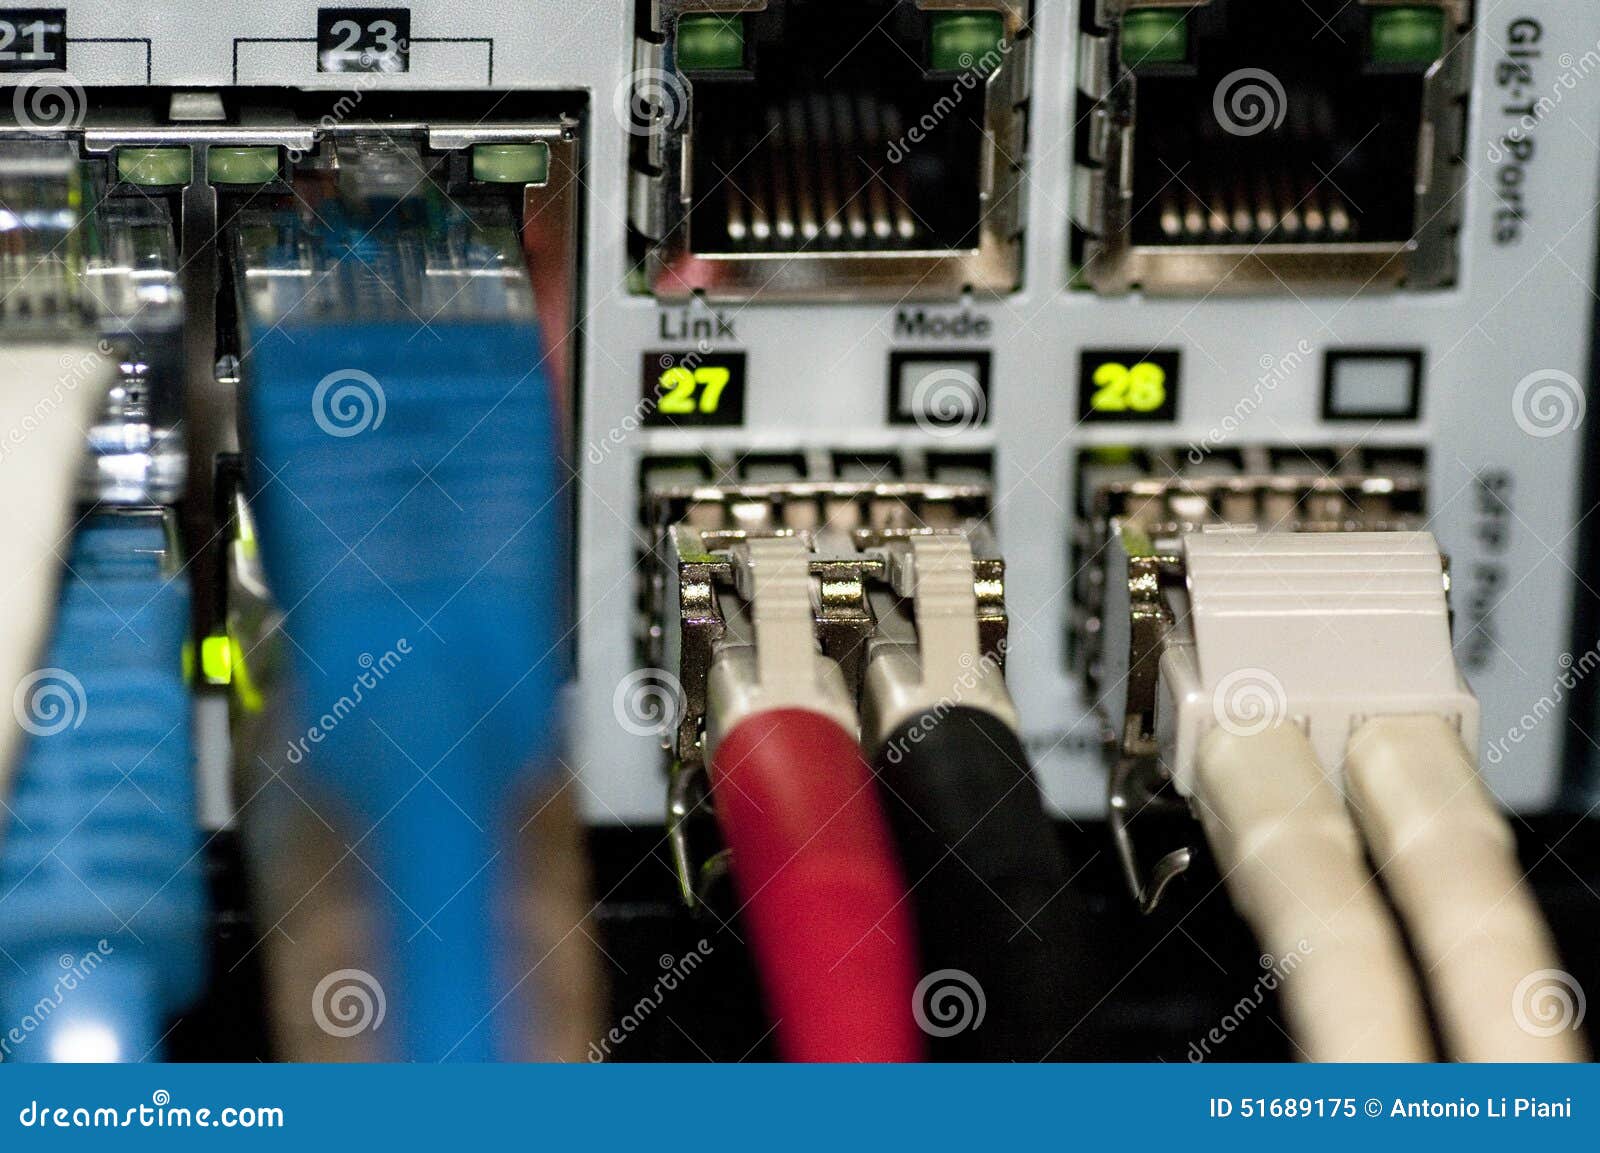 Interruptor da rede Ethernet com cabos ethernet. Interruptor da rede Ethernet com os cabos ethernet azuis, verdes, o cinza e o vermelho